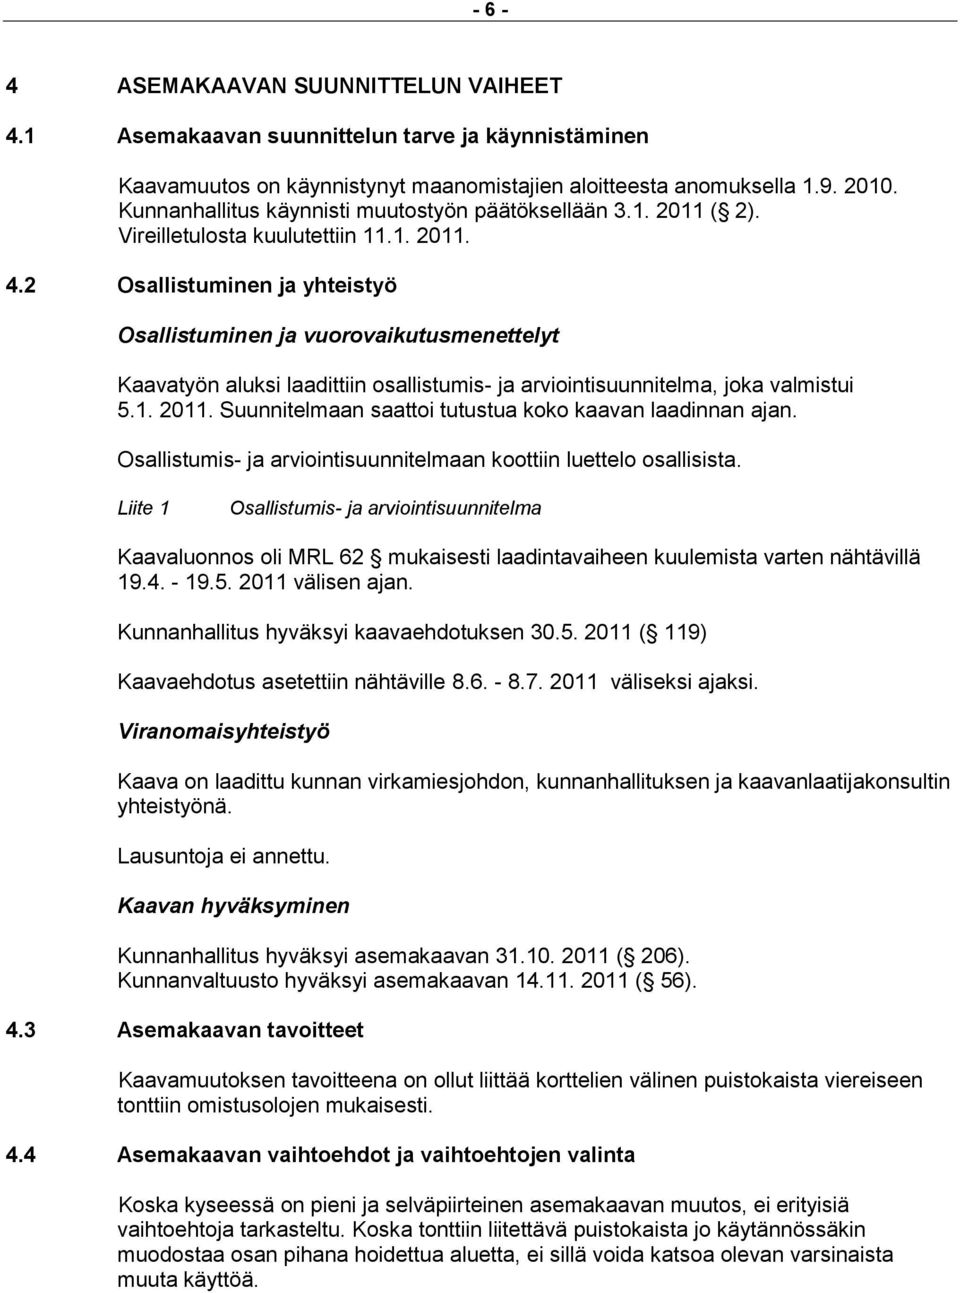 2 Osallistuminen ja yhteistyö Osallistuminen ja vuorovaikutusmenettelyt Kaavatyön aluksi laadittiin osallistumis- ja arviointisuunnitelma, joka valmistui 5.1. 2011.